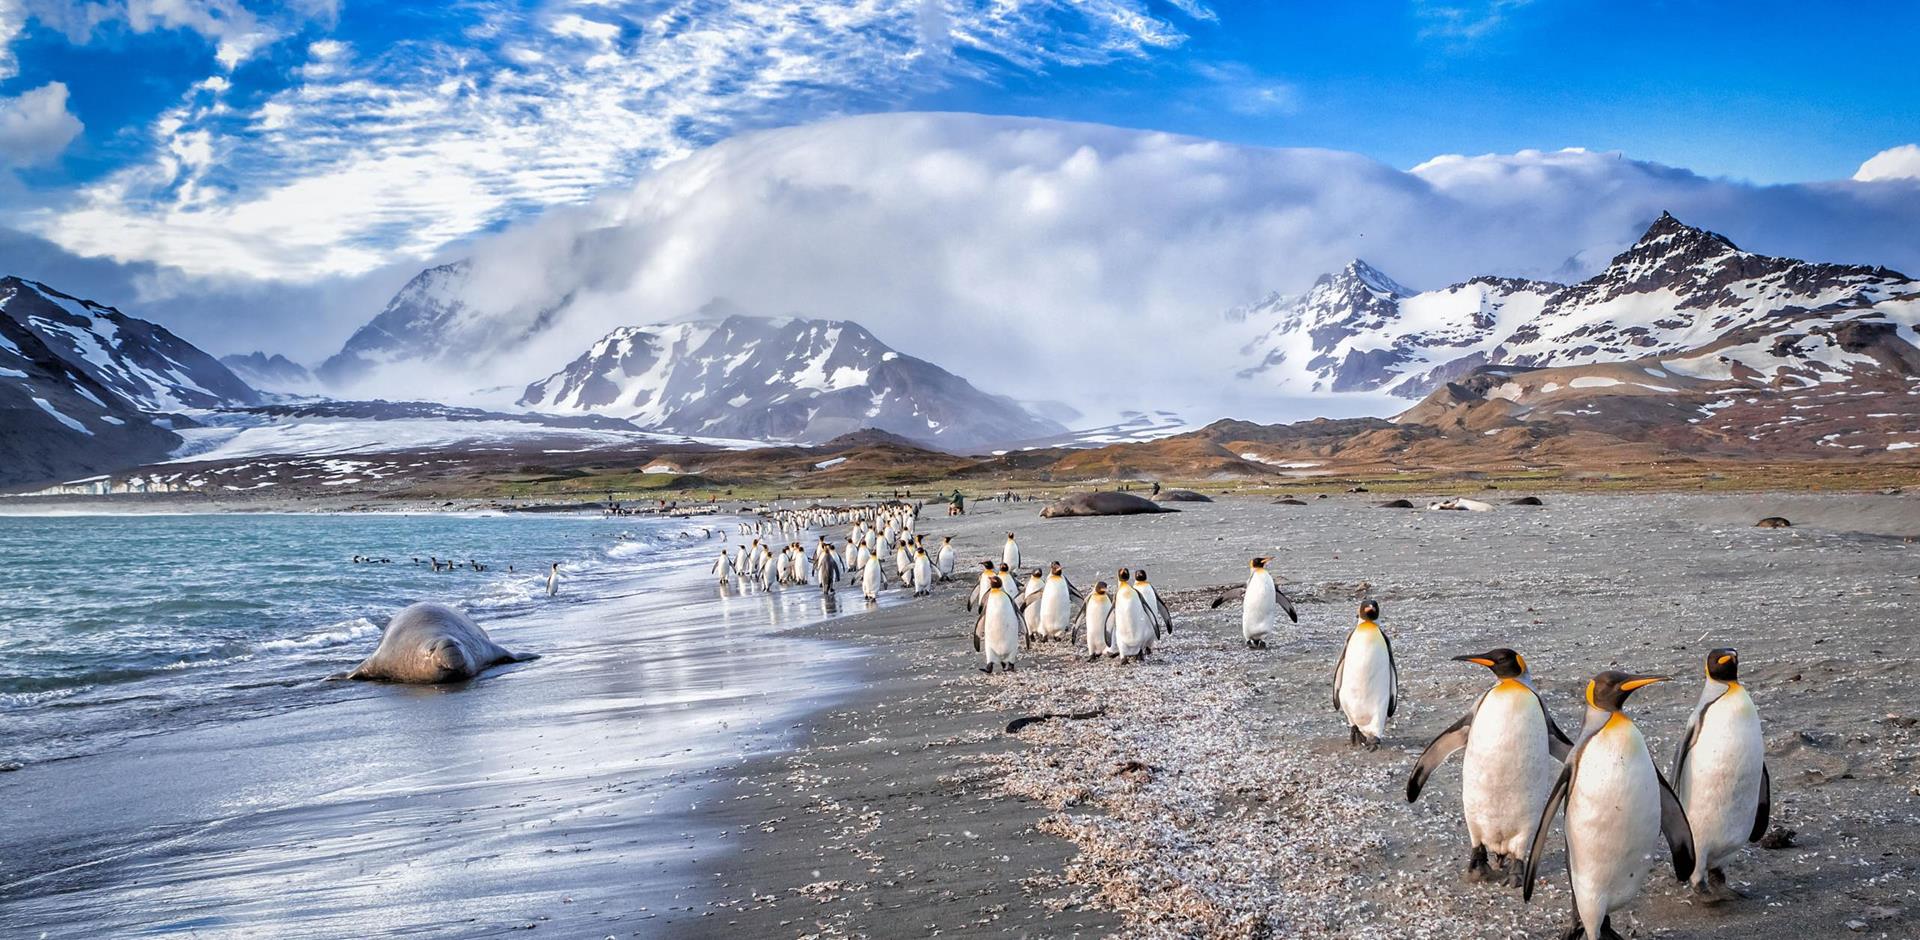 Antarctica, South Georgia and the Falkland Islands